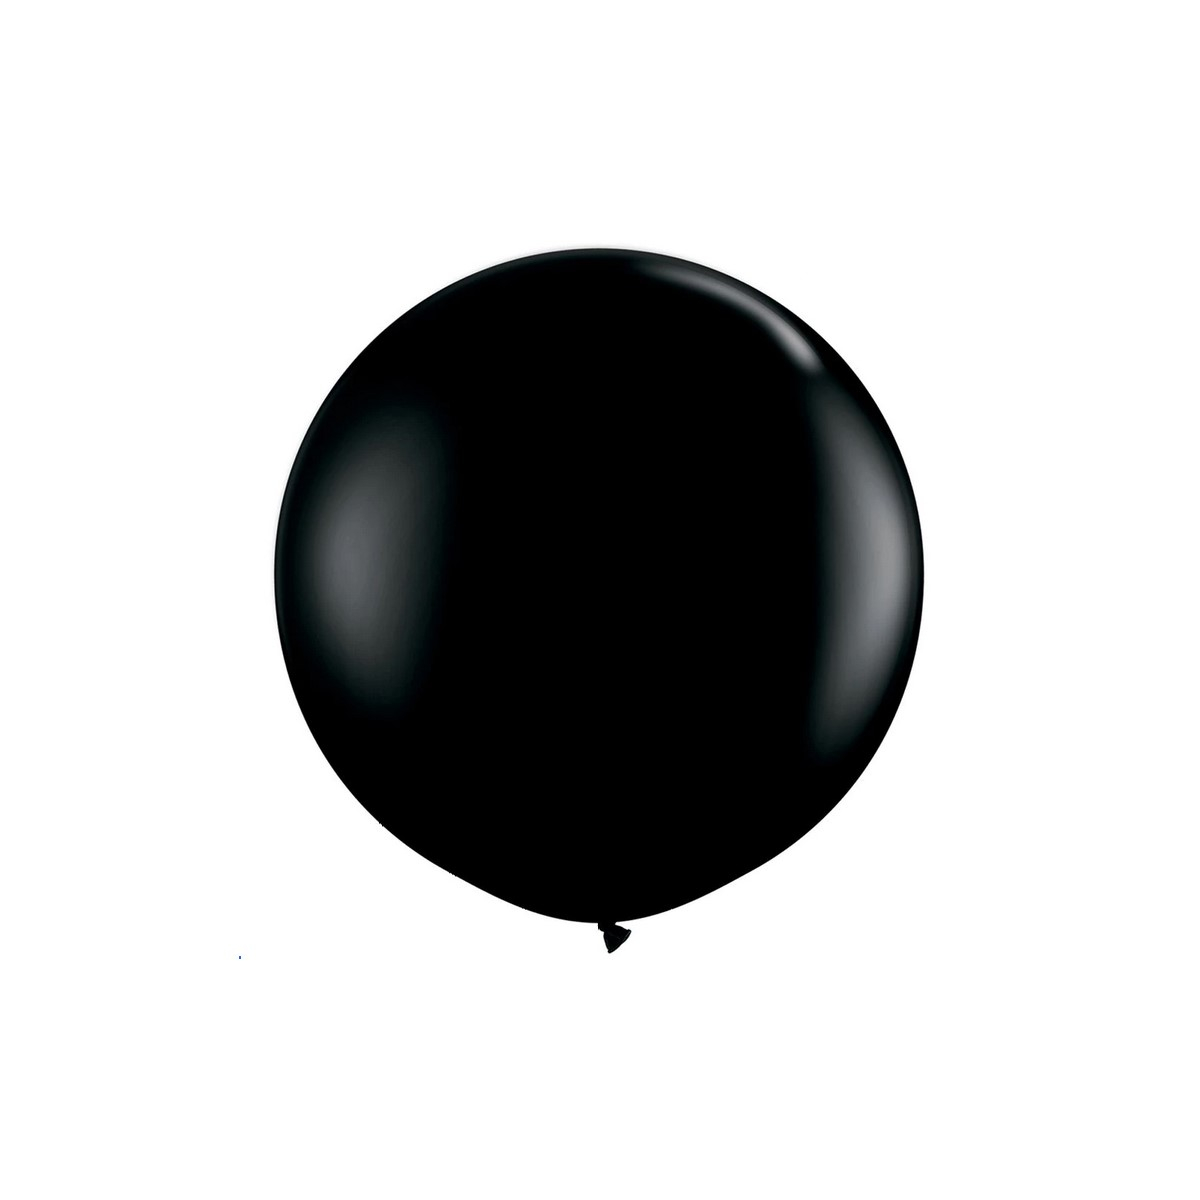 Черный шар против. “Черный шар” (the Black Balloon), 2008. Черный воздушный шар. Шар черный латексный. Шар черный круглый.